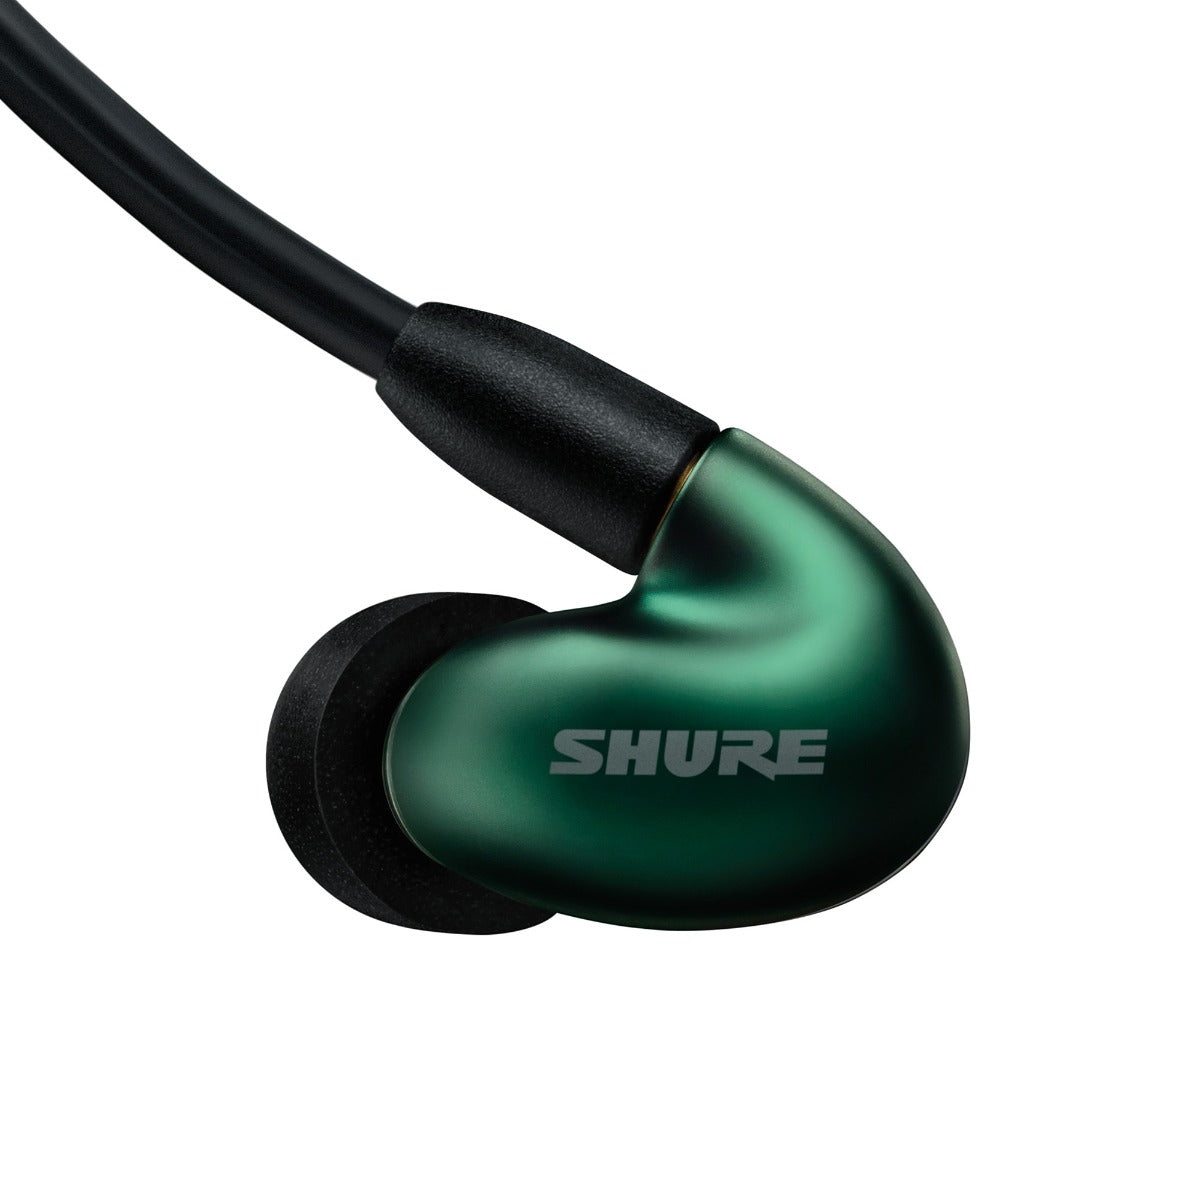 Shure SE846 Pro Gen 2 Sound Isolating Earphones - Jade, View 7